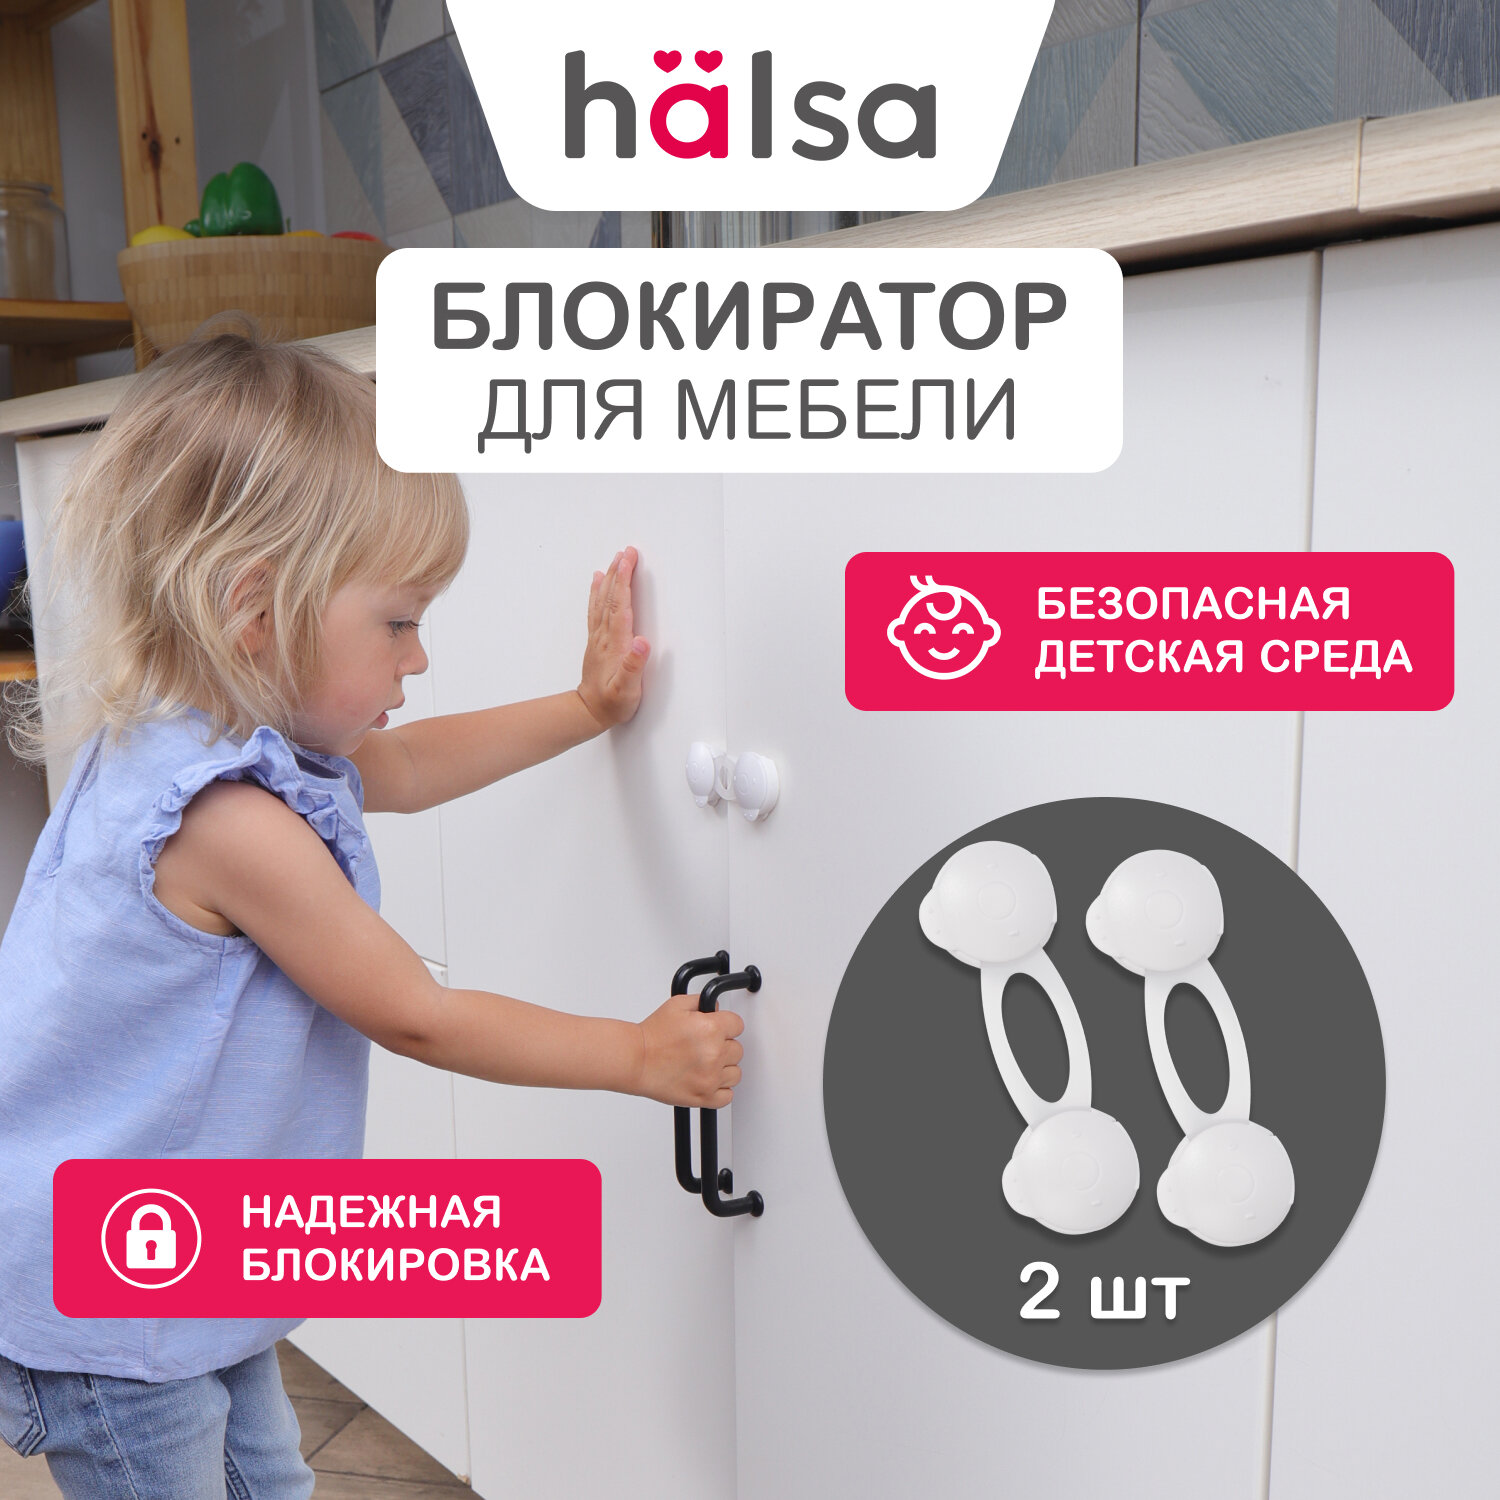 Универсальный гибкий блокиратор замок для шкафов HALSA защита от детей 2 шт